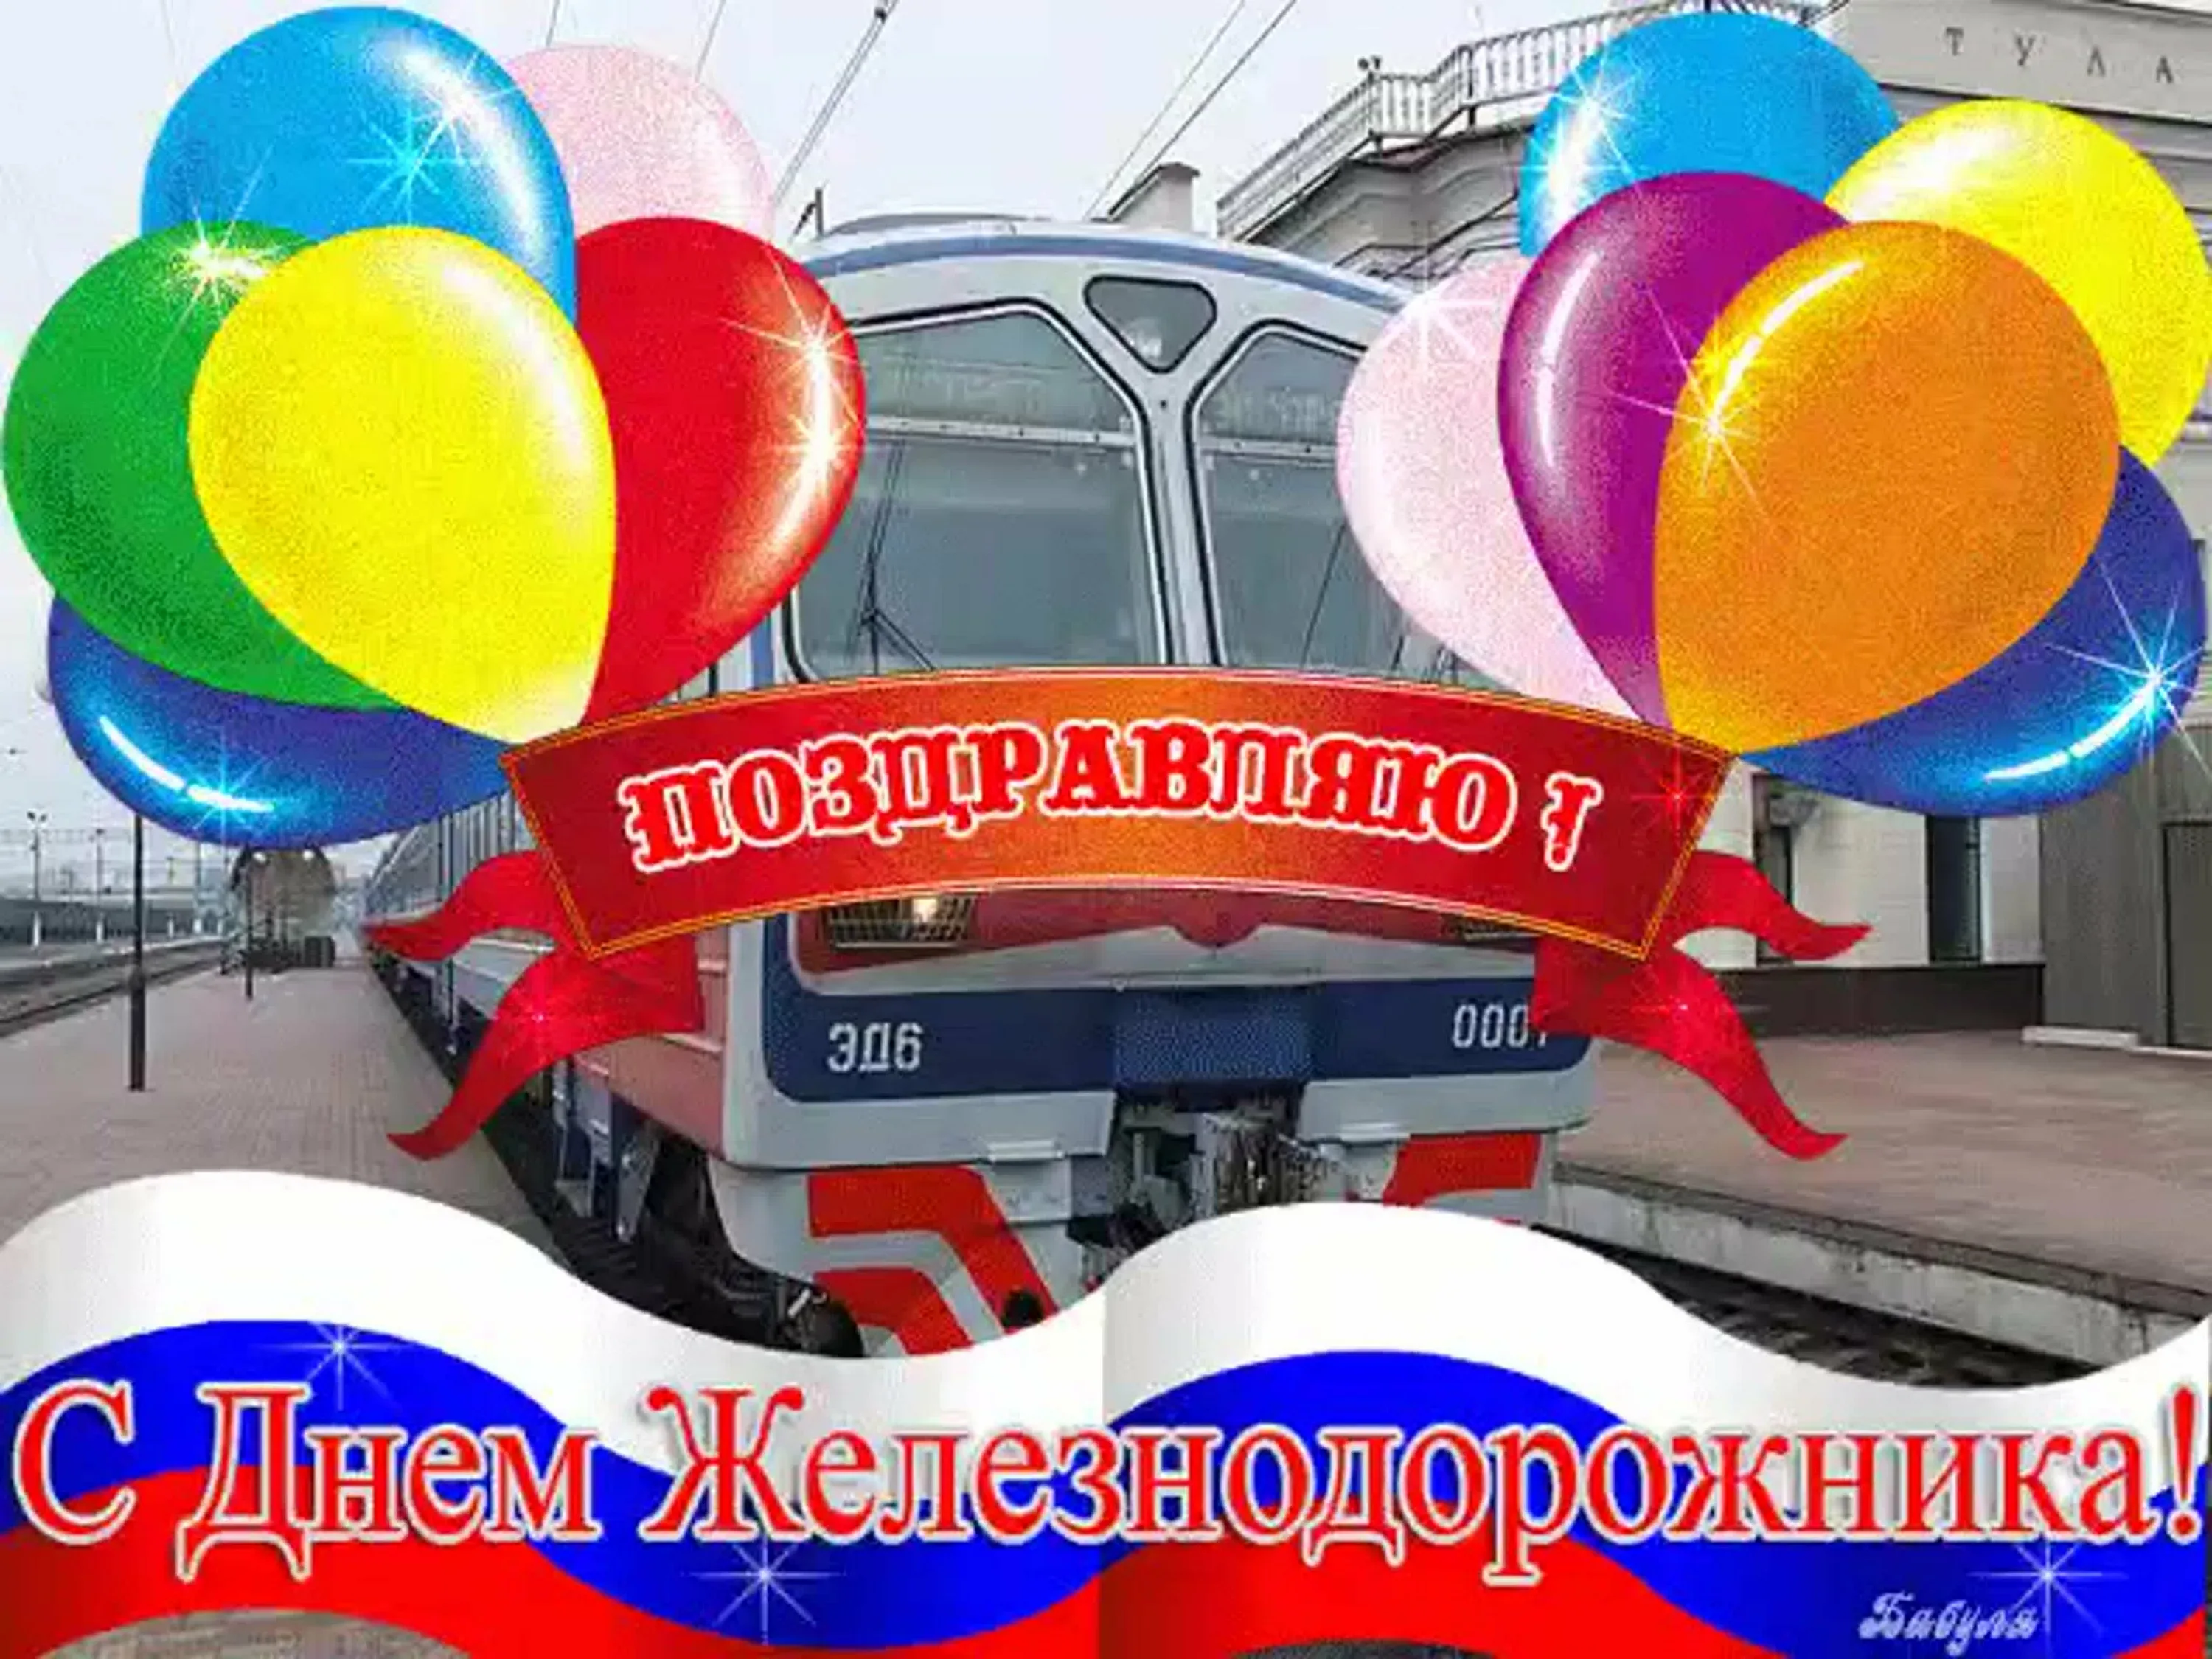 Фото Поздравление с днем железнодорожника Украины #37